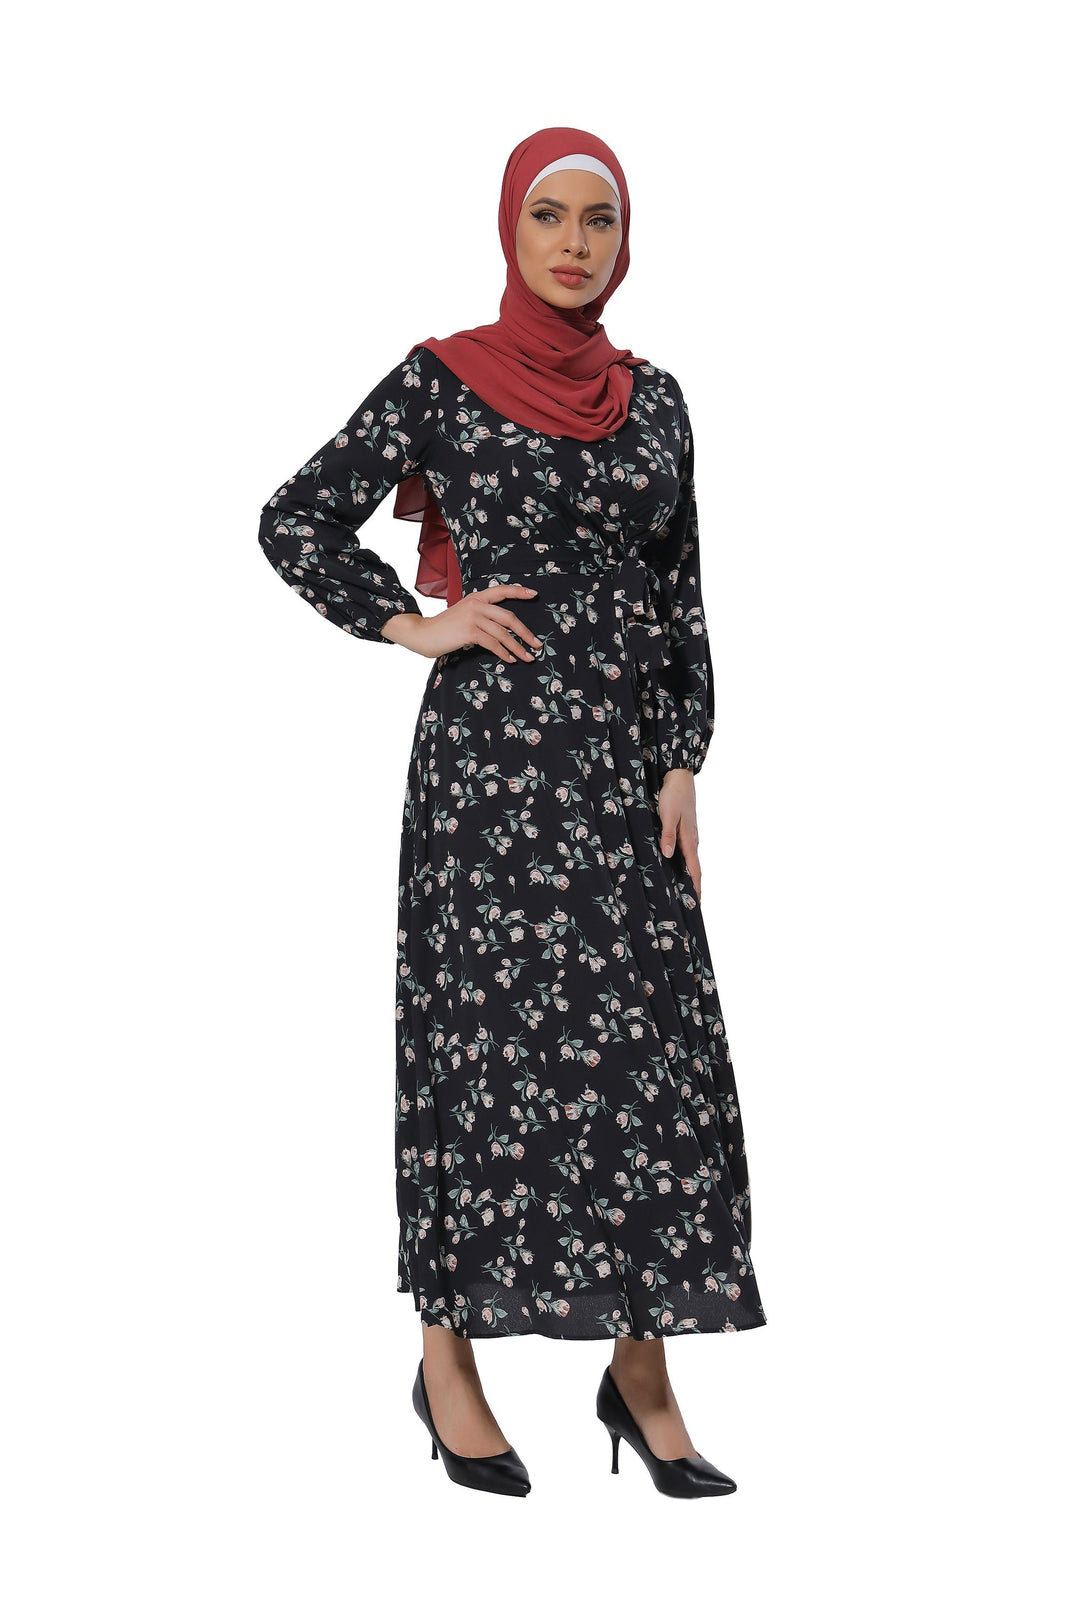 Urban Modesty - Cherry Blossom Criss Cross Maxi Dress